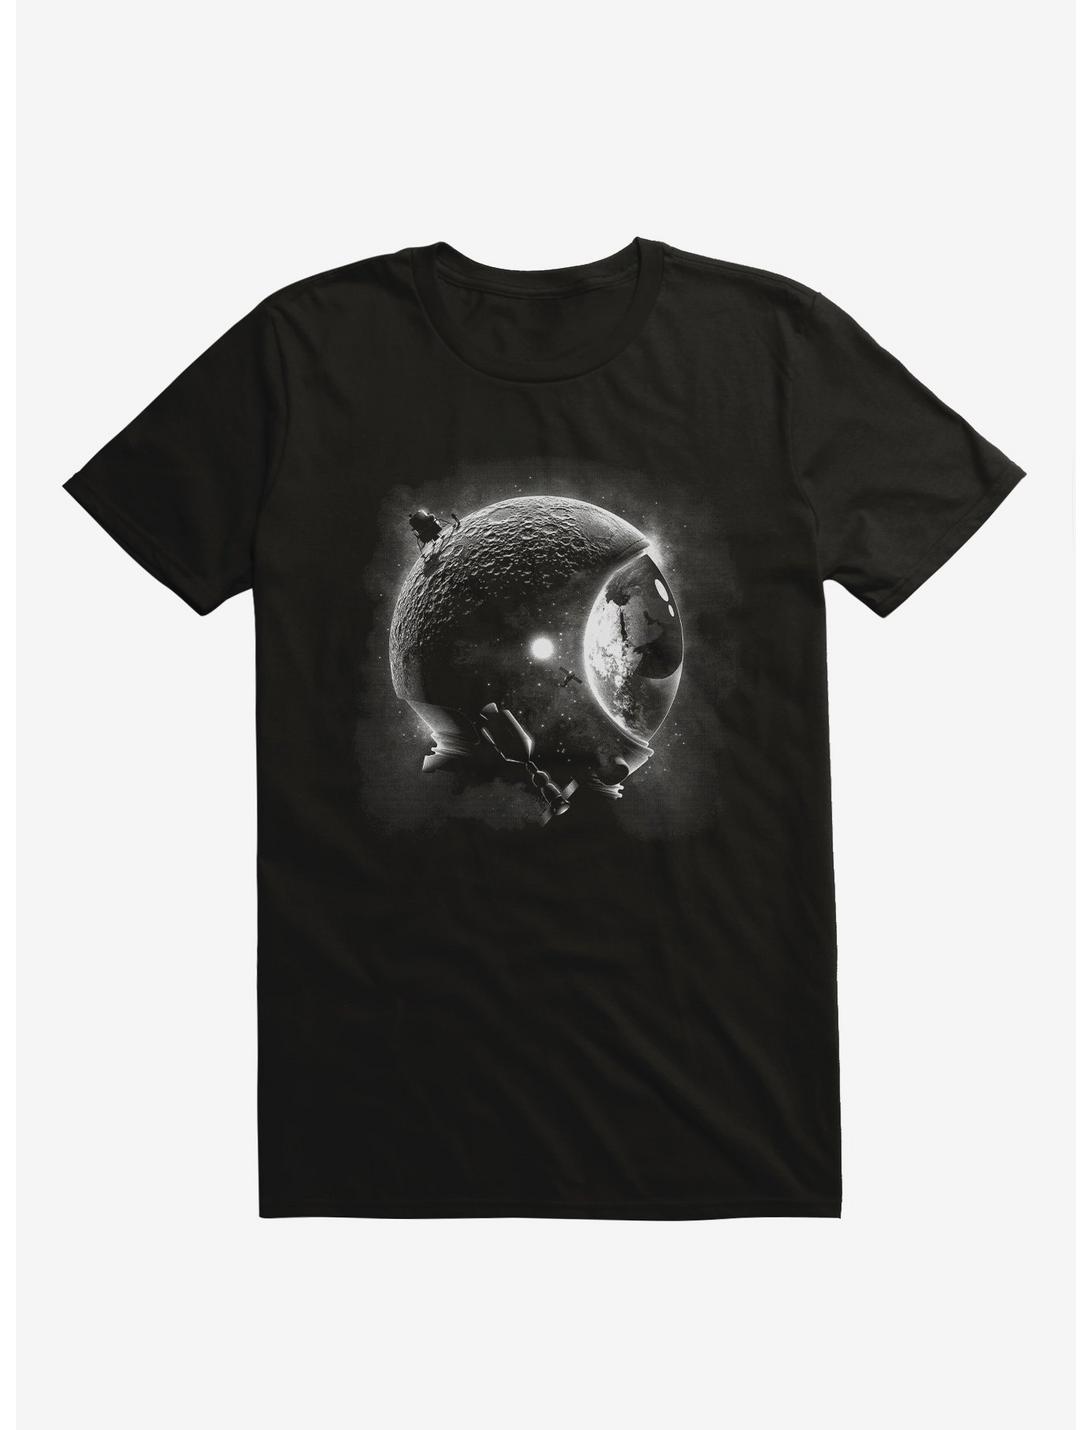 Moons Helmet Astronaut Black T-Shirt, BLACK, hi-res